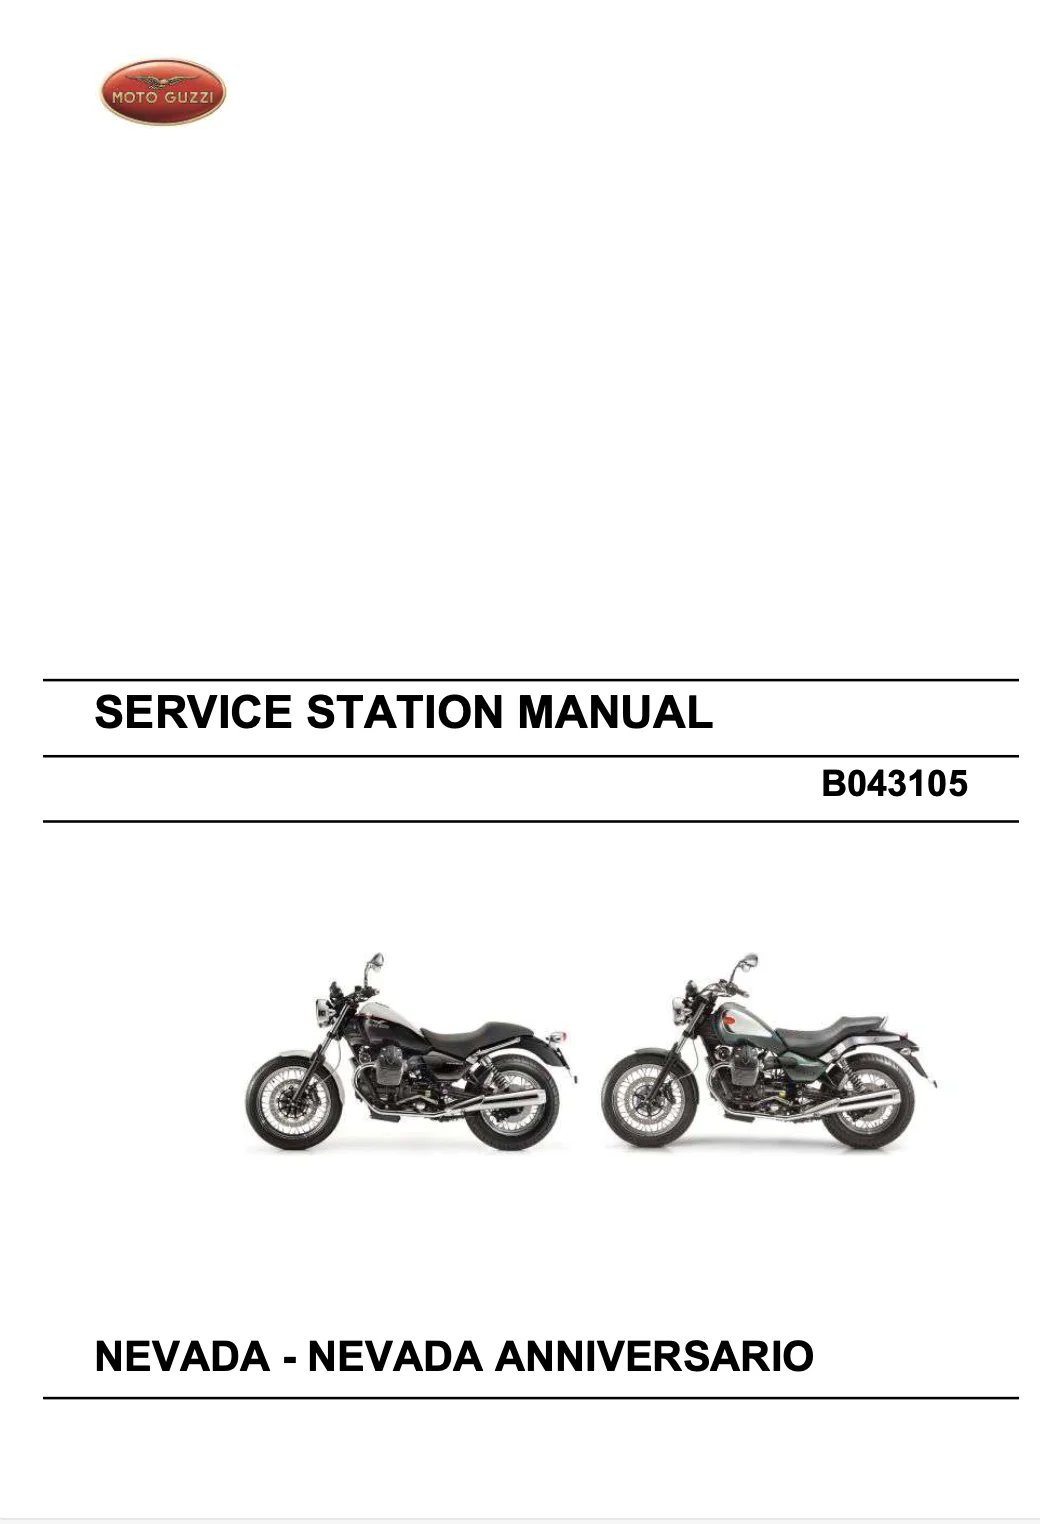 Moto Guzzi Nevada Anniversario models 2004 to 2013 Service Manual original motorcycle manufacturer's PDF repair manual download